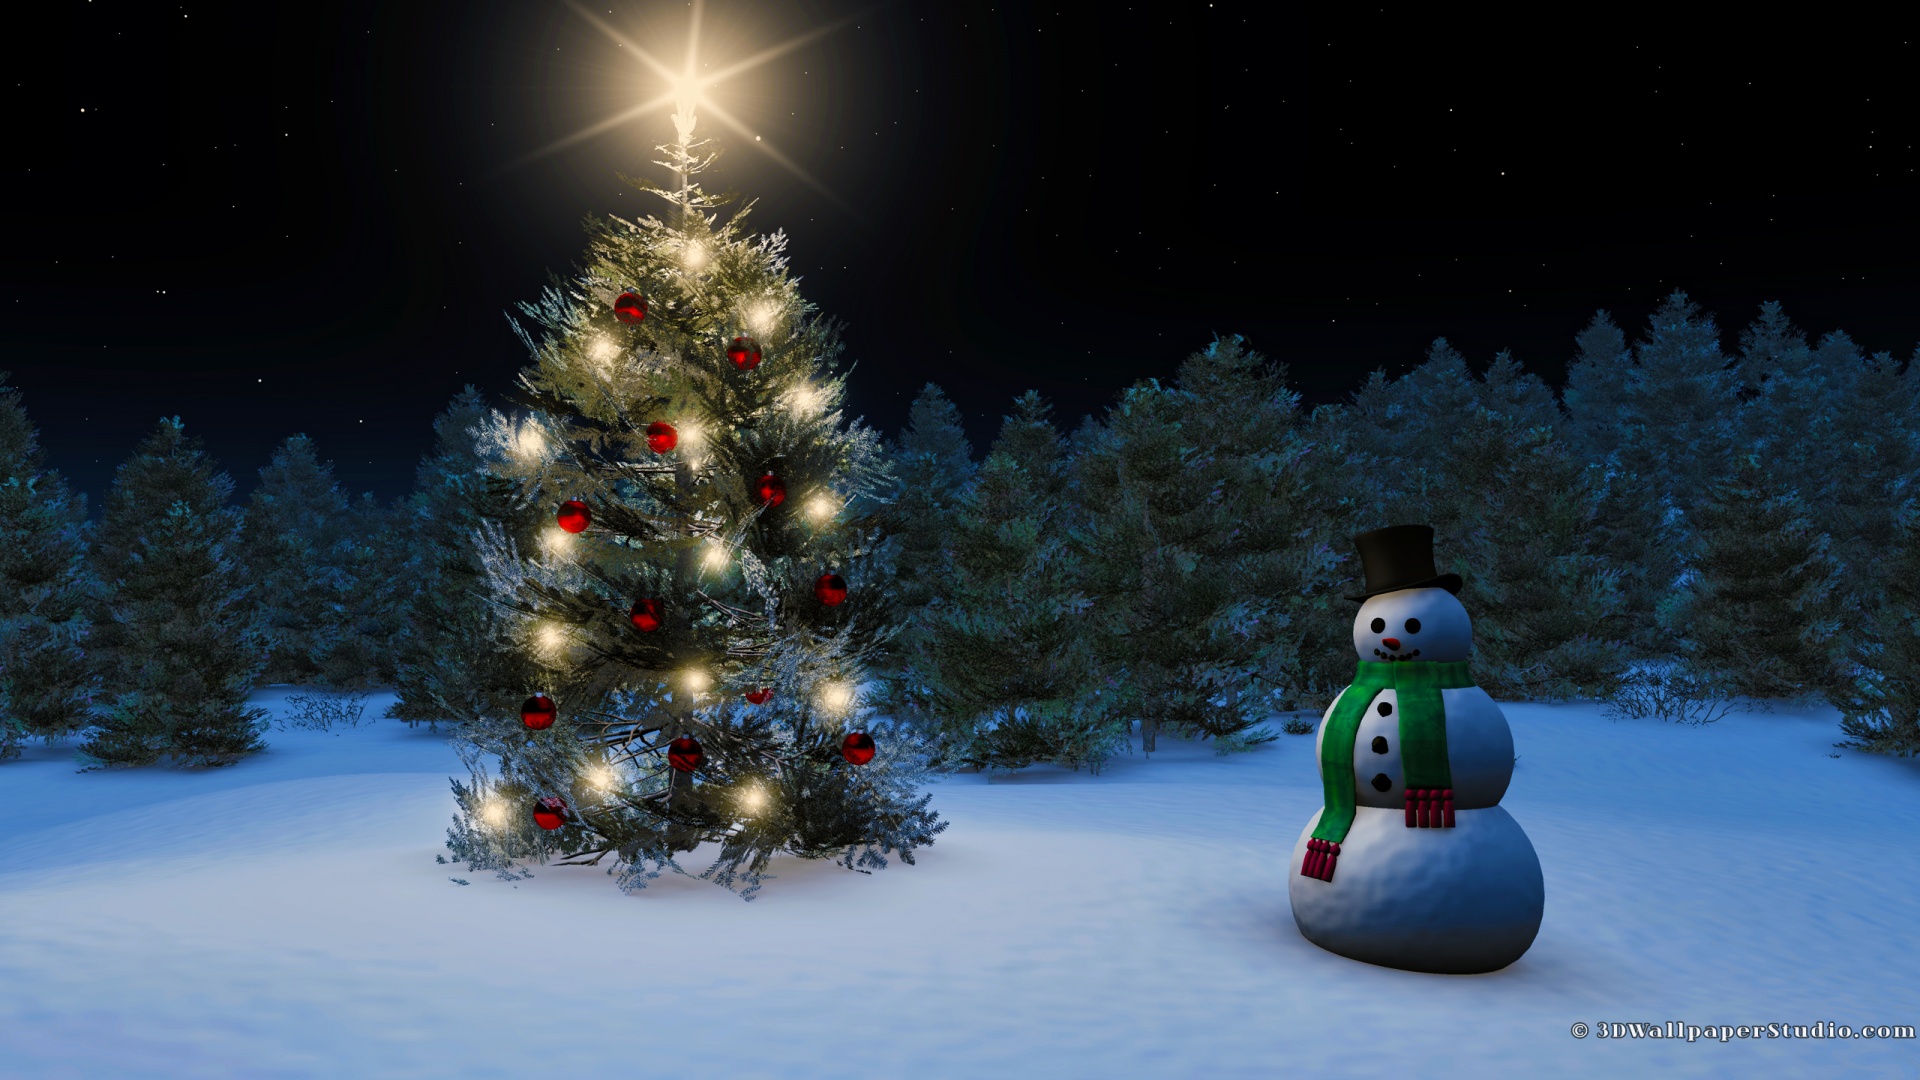 Tận hưởng không khí Noel đầy ấm áp và thơm ngát bằng hình nền Giáng Sinh đẹp mắt này. Hãy tải ngay những hình ảnh đầy sắc màu để trang trí cho máy tính hay điện thoại của bạn, khiến màn hình tràn đầy niềm vui và tình yêu thương.